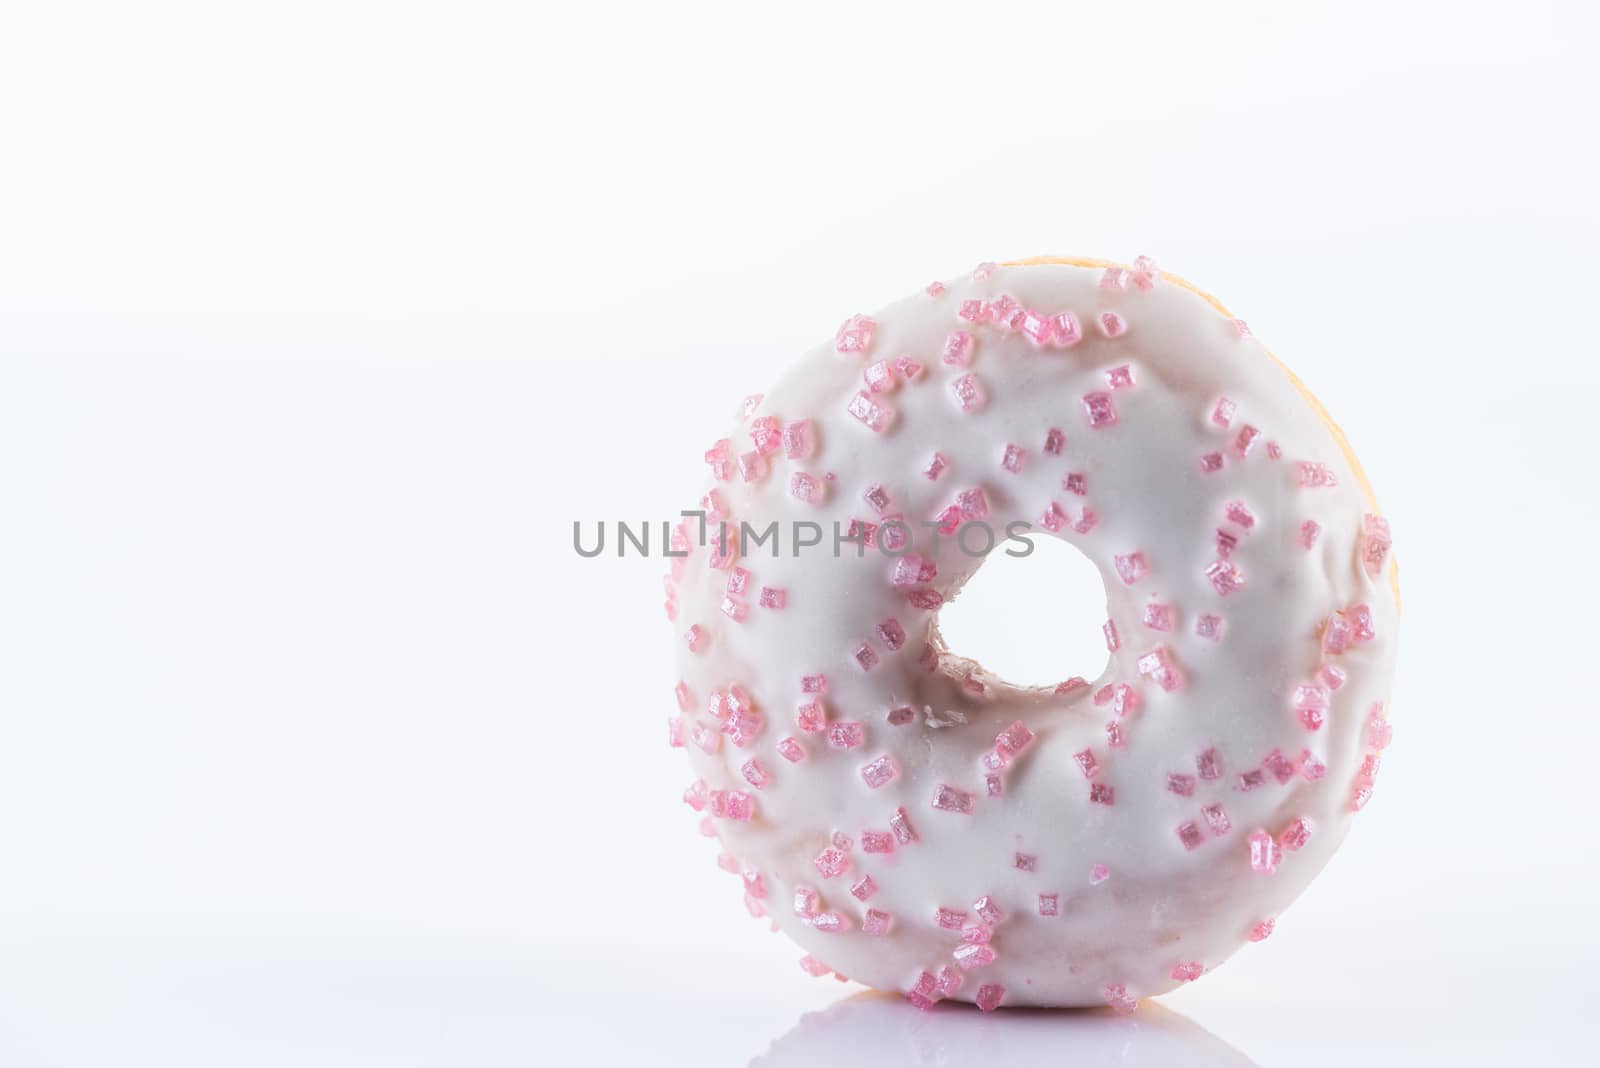 Single White Chocolate Donut or Doughnut. Studio Photo on White  by merc67